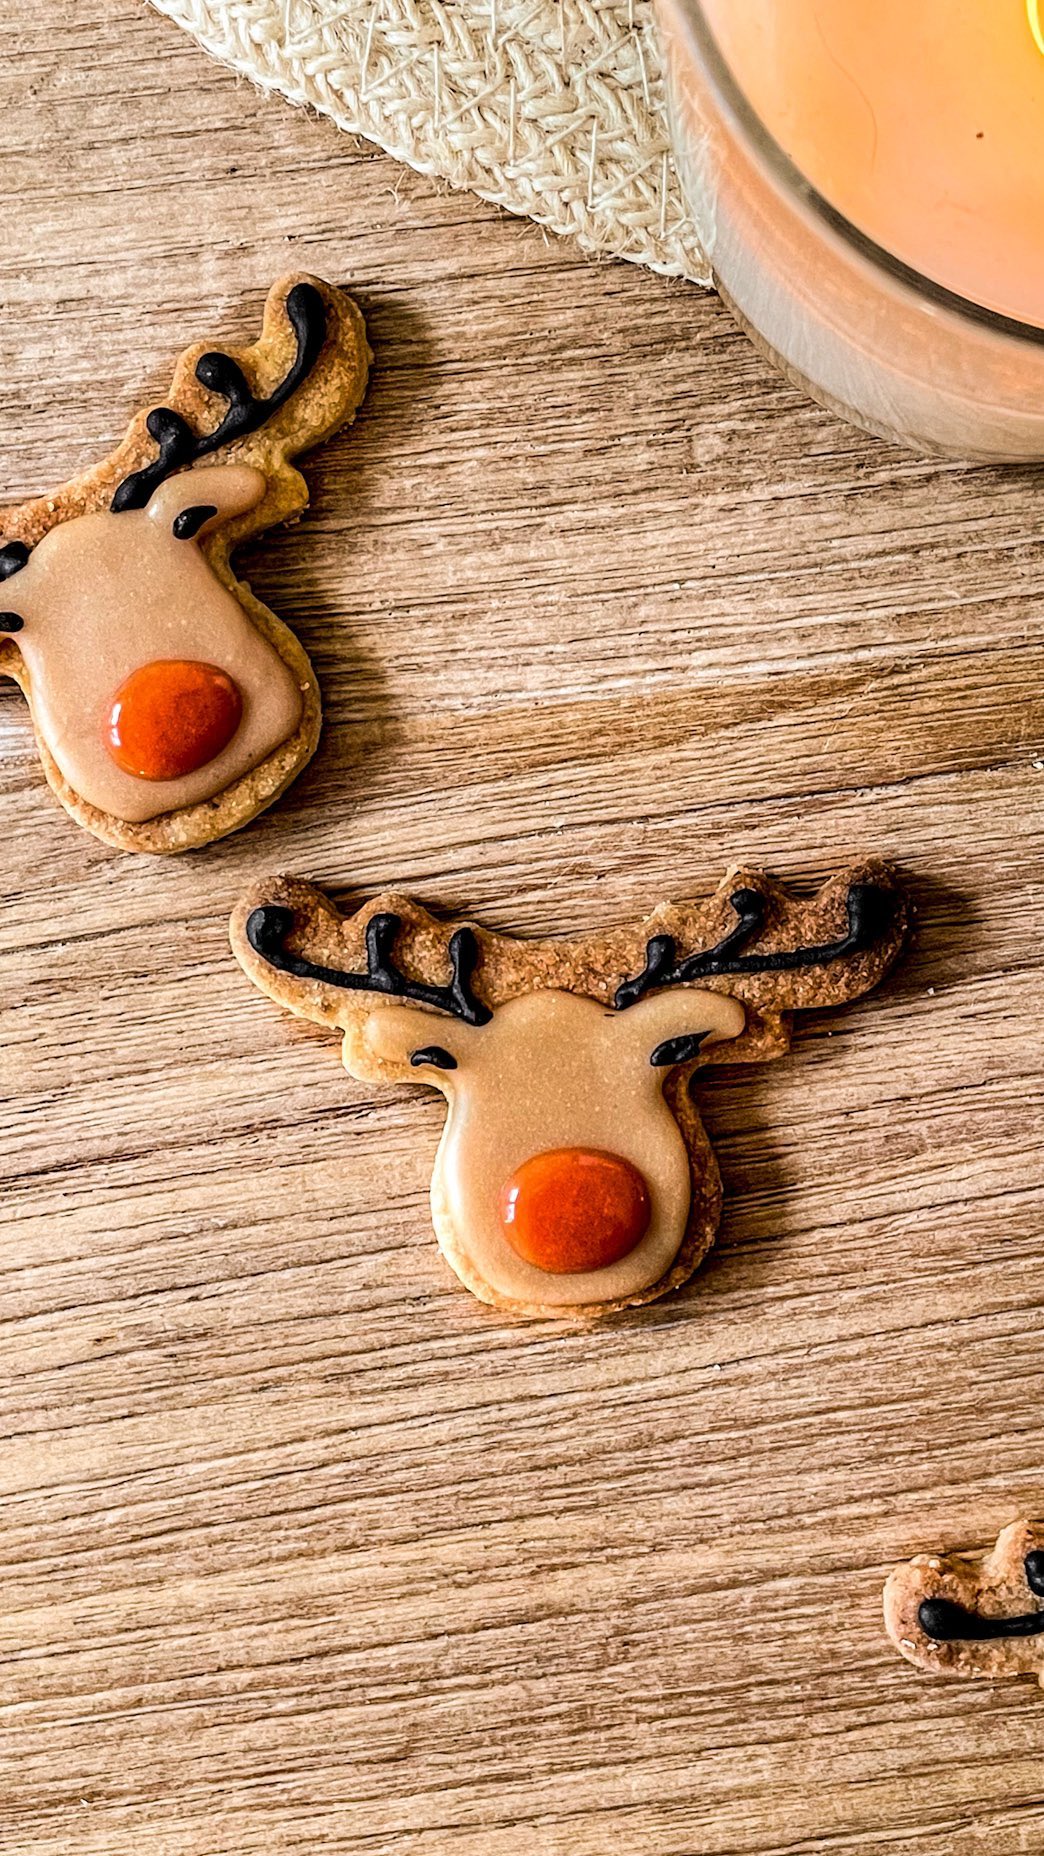 Joyeux Noël ! 🎄✨

Voici la décoration de mes biscuits ‘petits rennes de Noël’ 🎅🏼

Vous avez fait des biscuits pour les fêtes ? Profitez bien ! ❤️🎄

#reveillondenoel #joyeusesfetes #merrychristmas🎄 #rennedenoel #santasreindeer #hohoho🎅 #joyeuxnoel #noël #noel2022 #biscuitdenoel #biscuitspersonnalisés #christmascookies